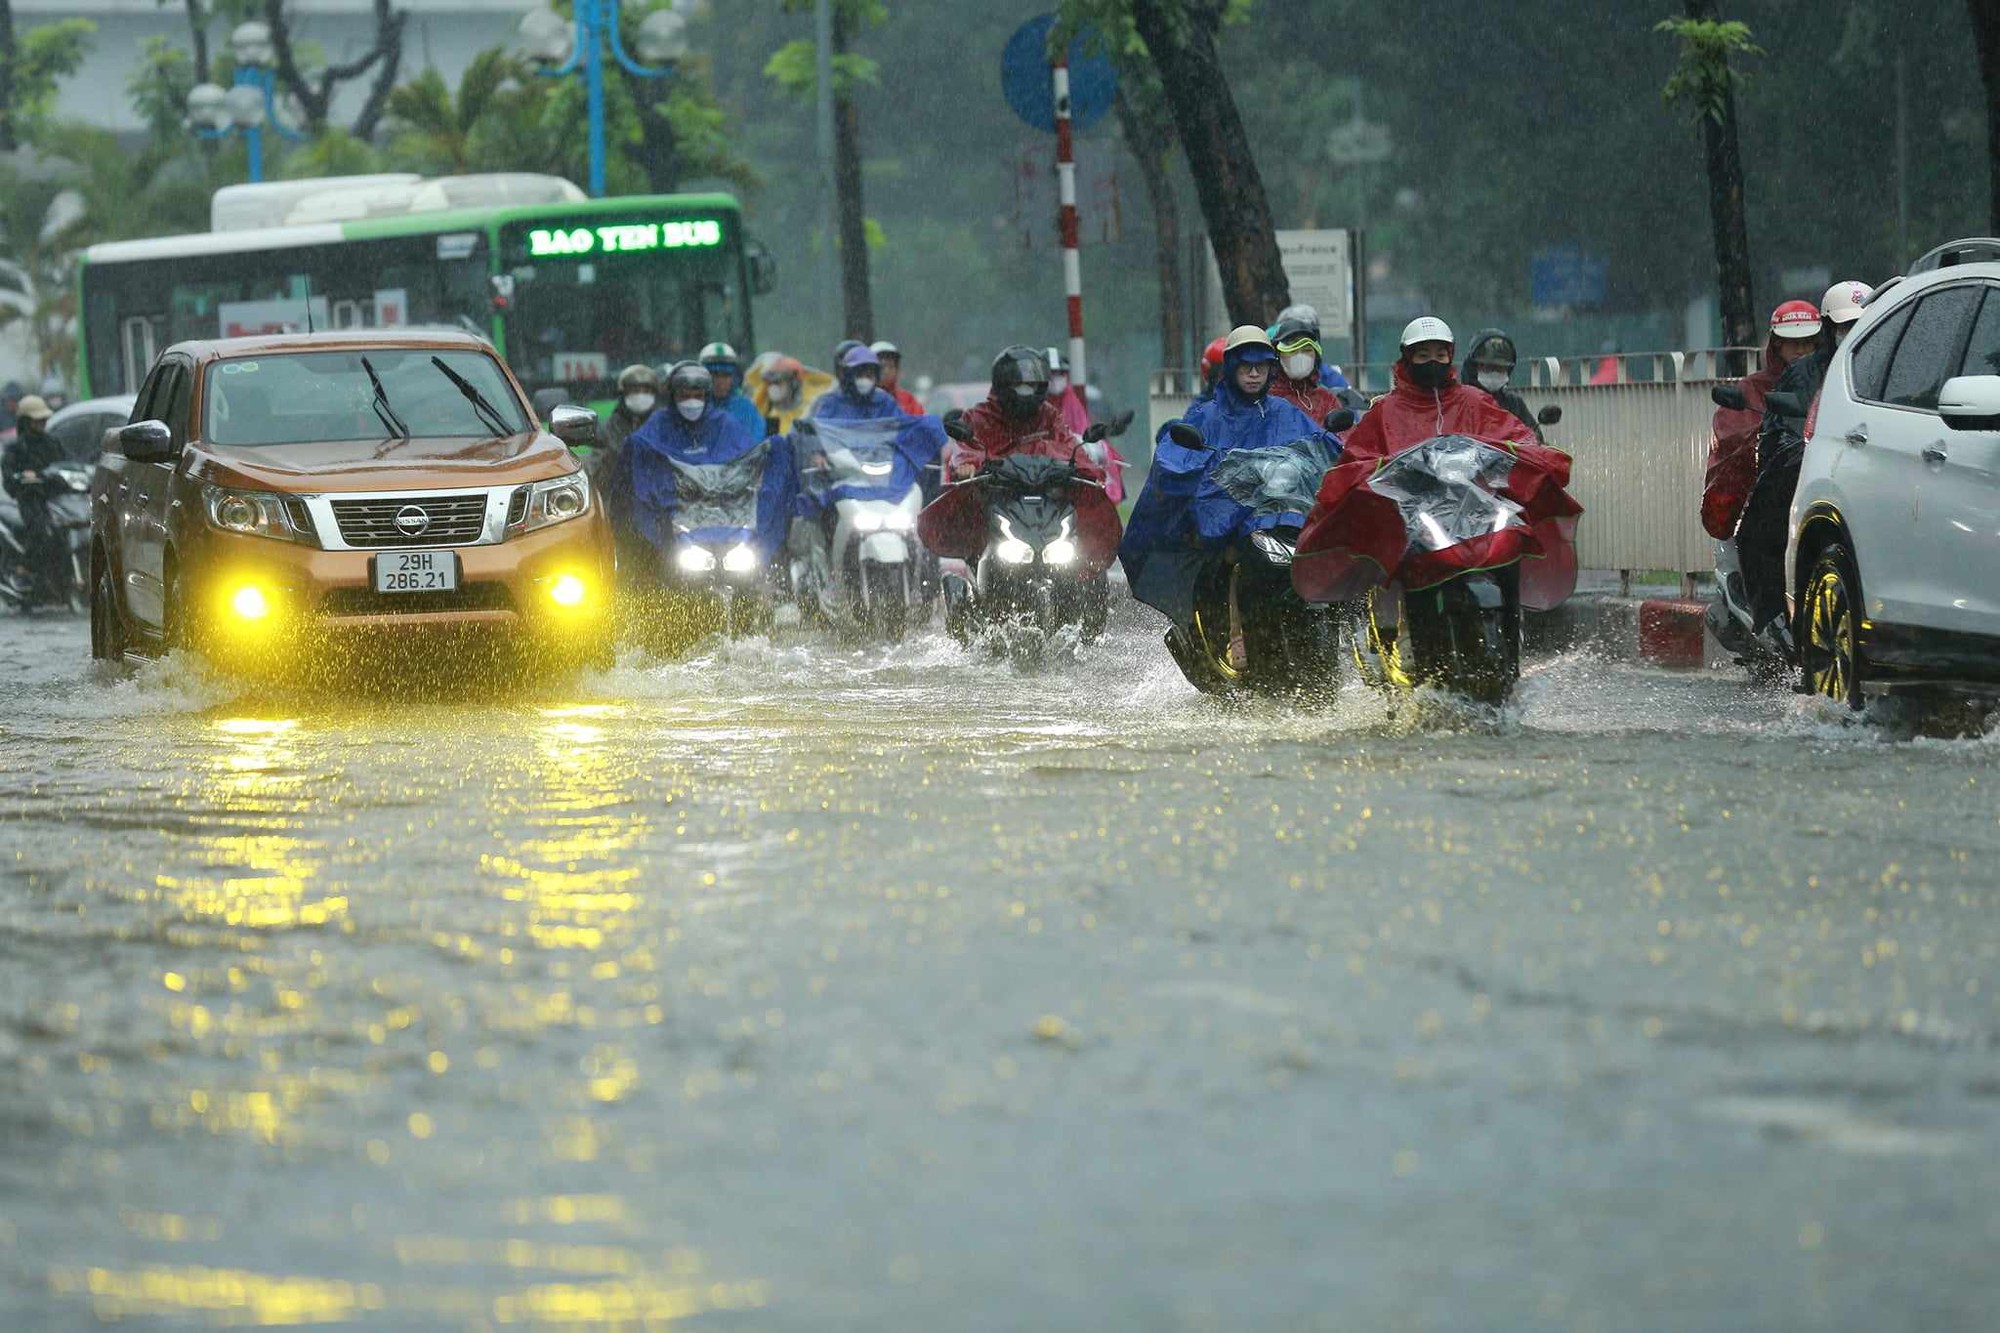 Ngay lúc này tại Hà Nội: Nhiều tuyến đường đã ngập rất nặng, xe chết máy la liệt - Ảnh 8.